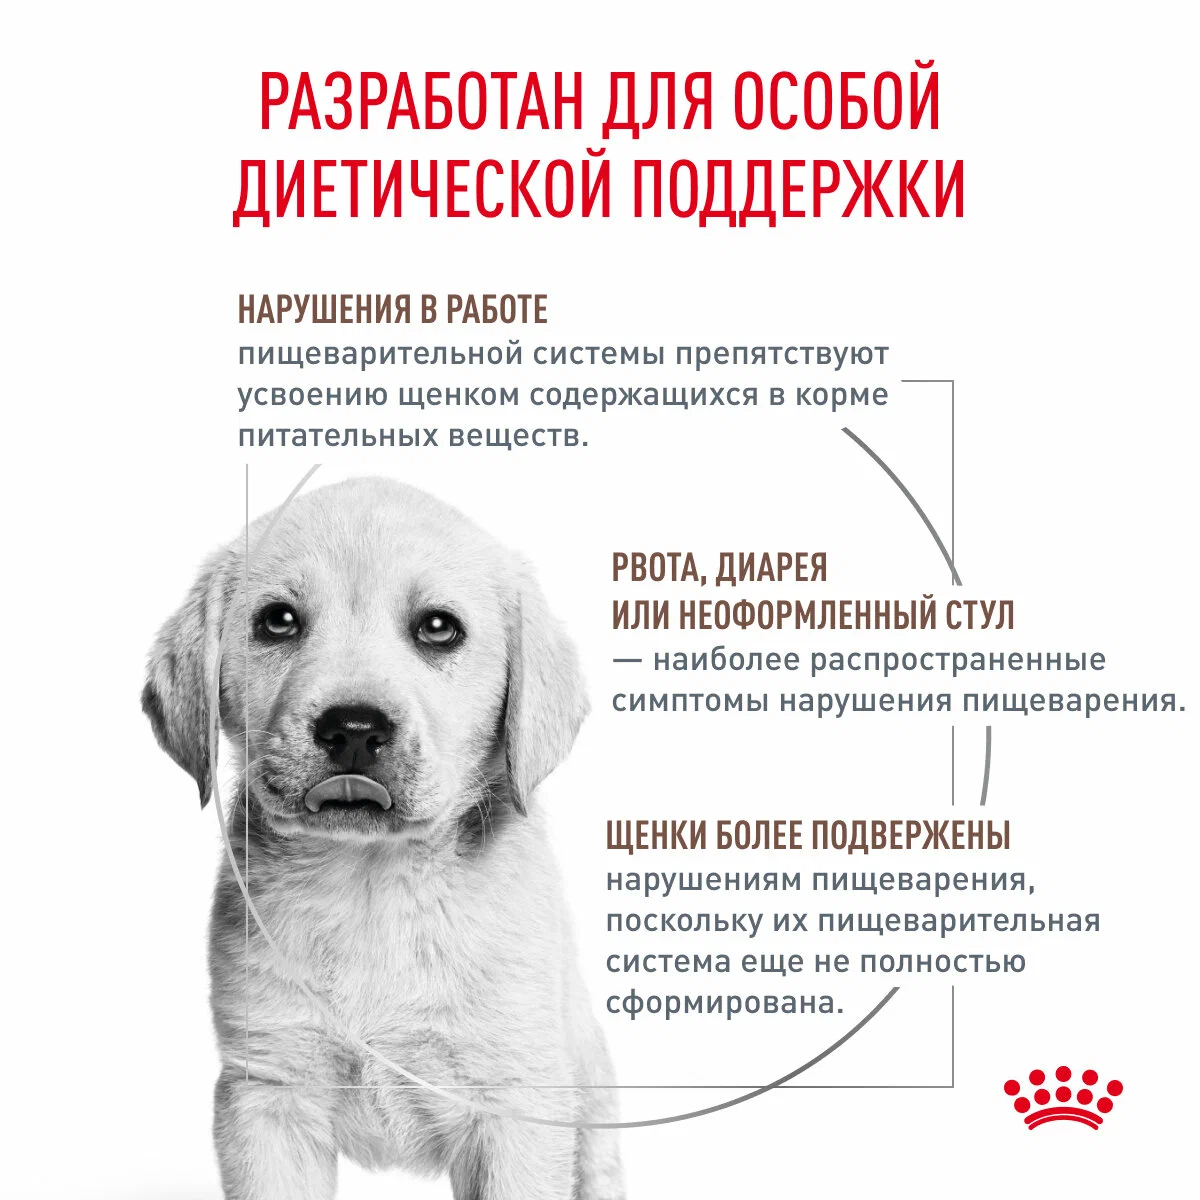 Сухой корм для щенков Royal Canin Gastrointestinal Puppy при острых расстройствах пищеварения 1 кг